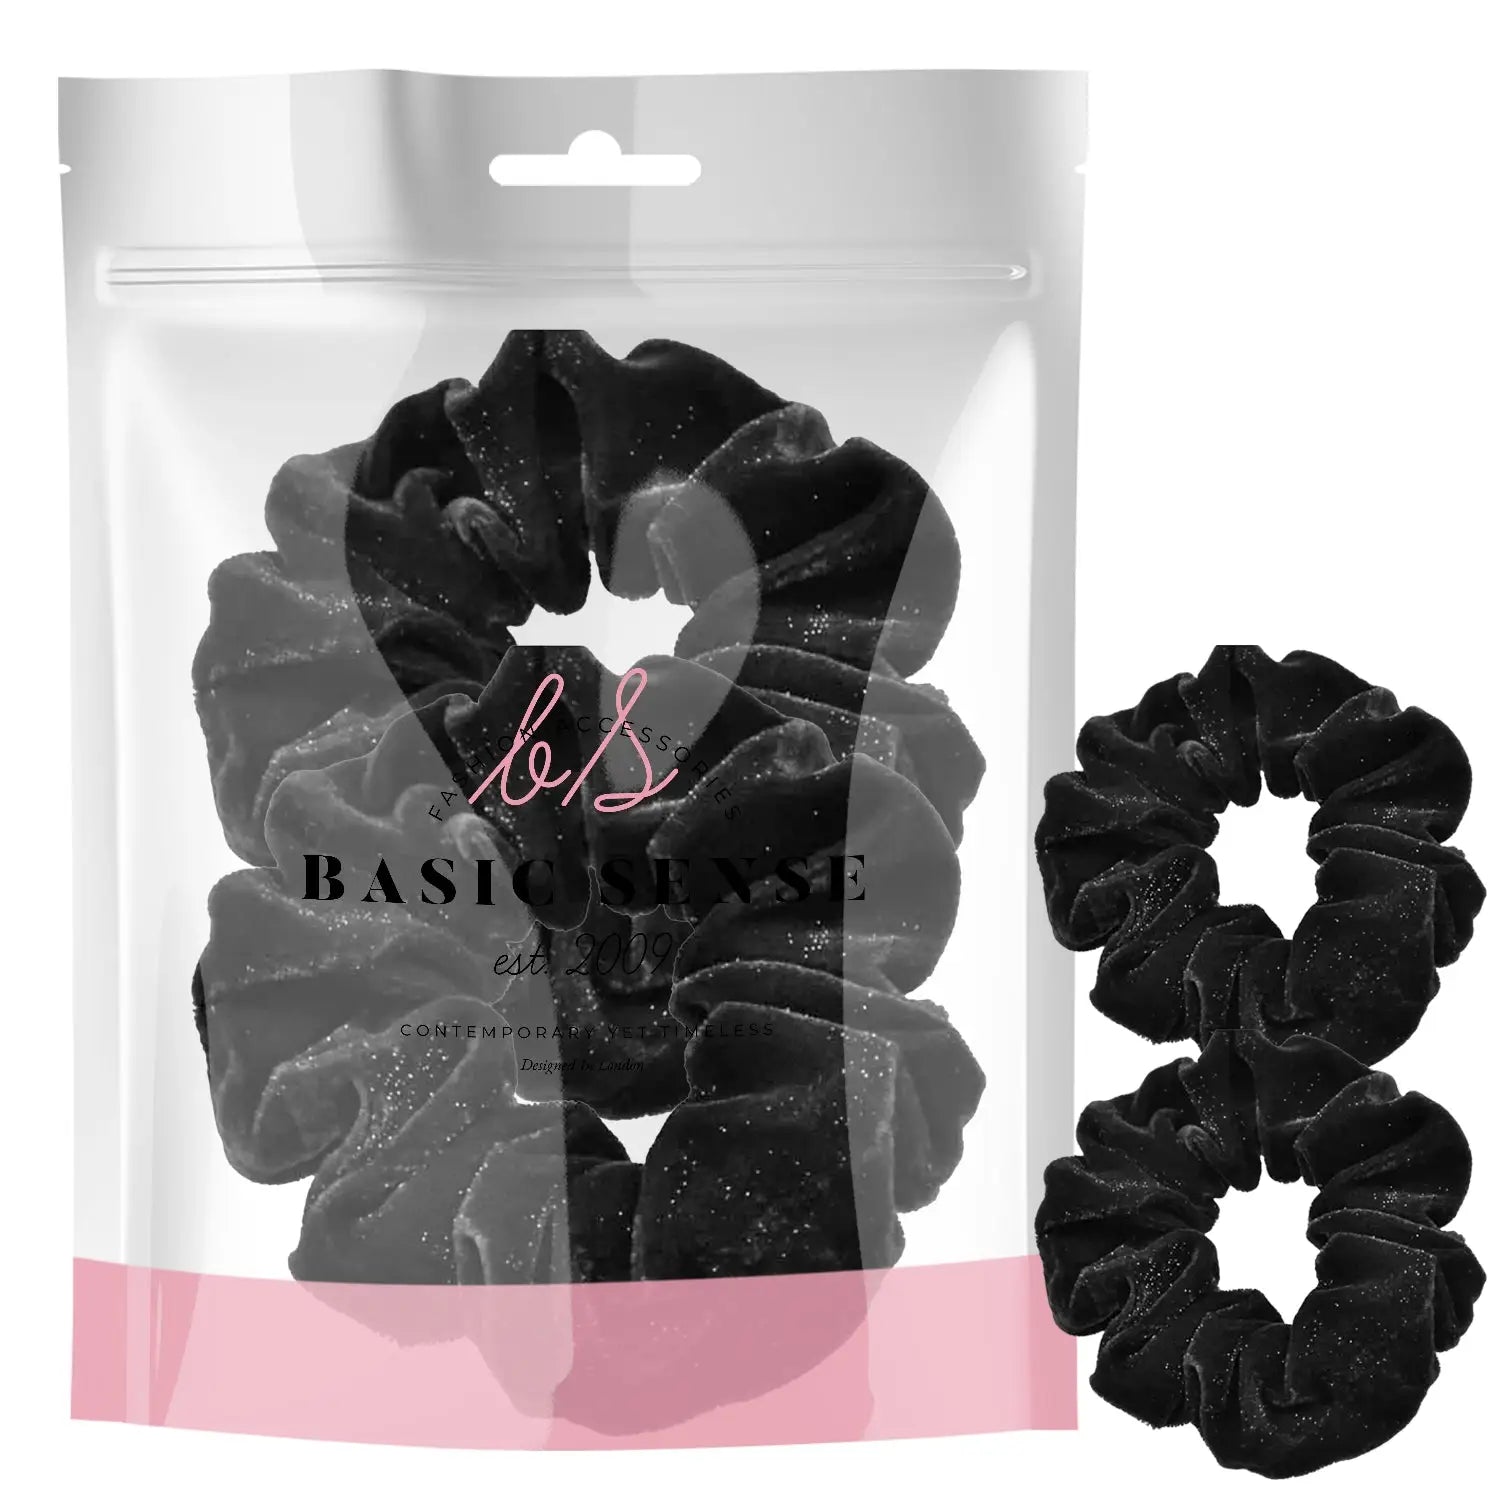 Black velvet hair scrunchies: Glitter velvet hair accessory set for girls